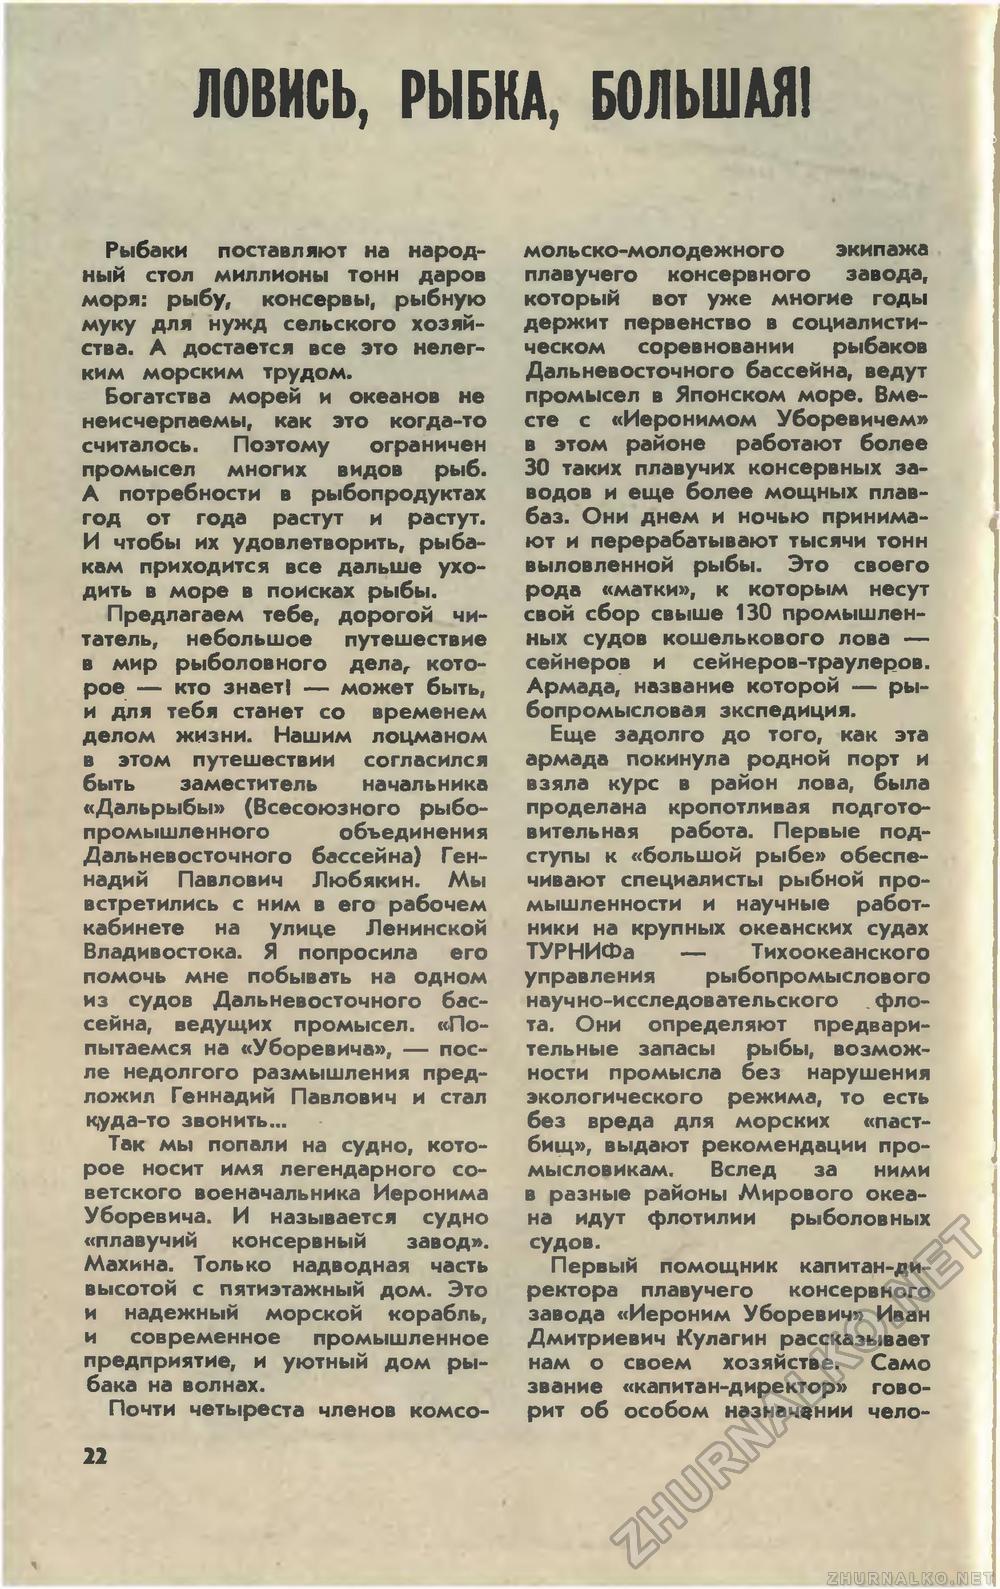   1981-04,  24